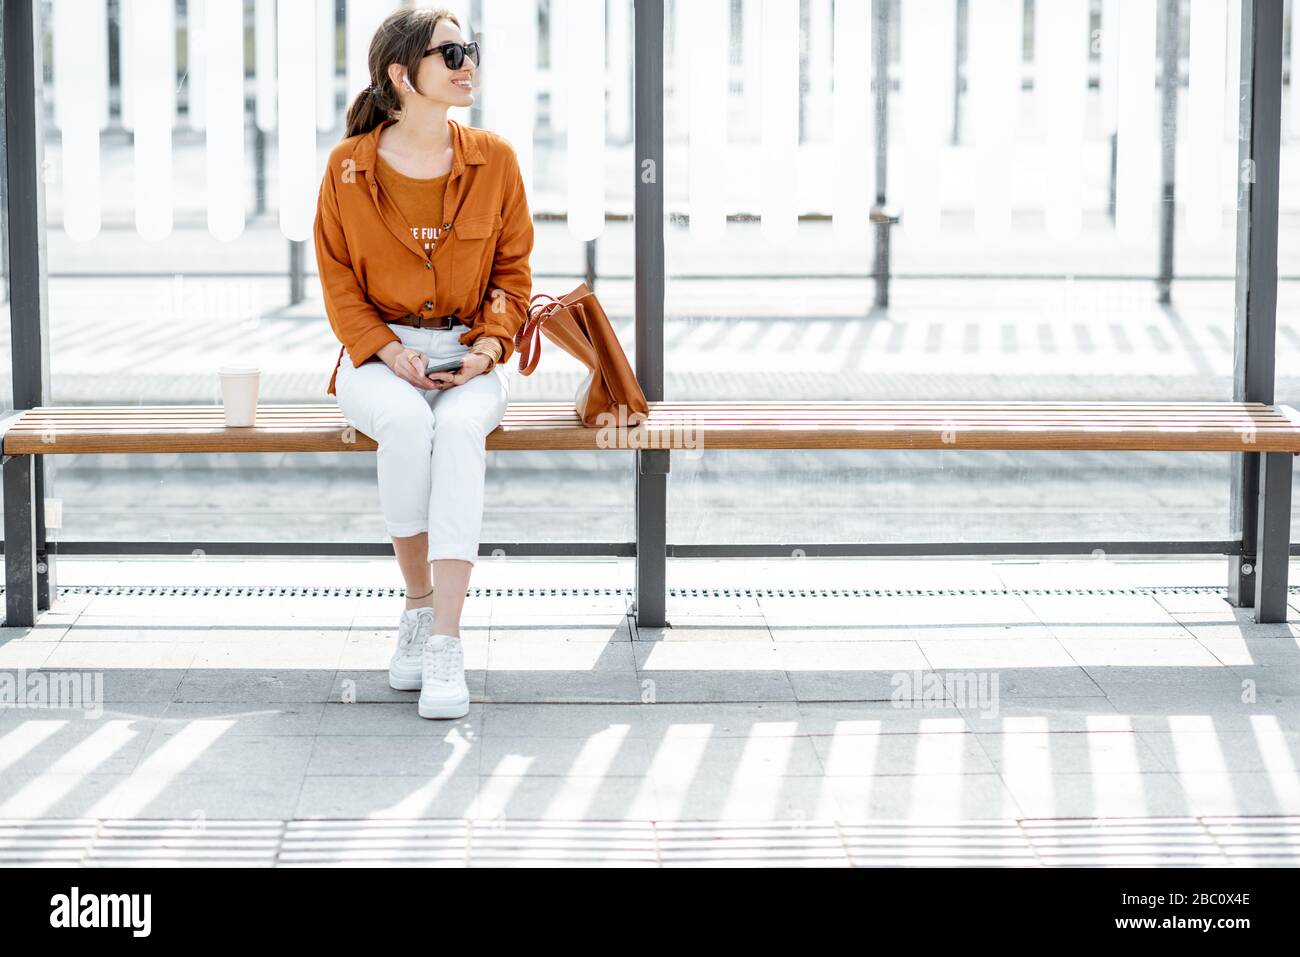 Eine fröhliche, stilvolle Frau, die mit Telefon und Tasche an einem modernen öffentlichen Verkehrsmittel sitzt, hält an einem sonnigen Tag im Freien. Konzept eines städtischen Verkehrs und urbun Life Stockfoto